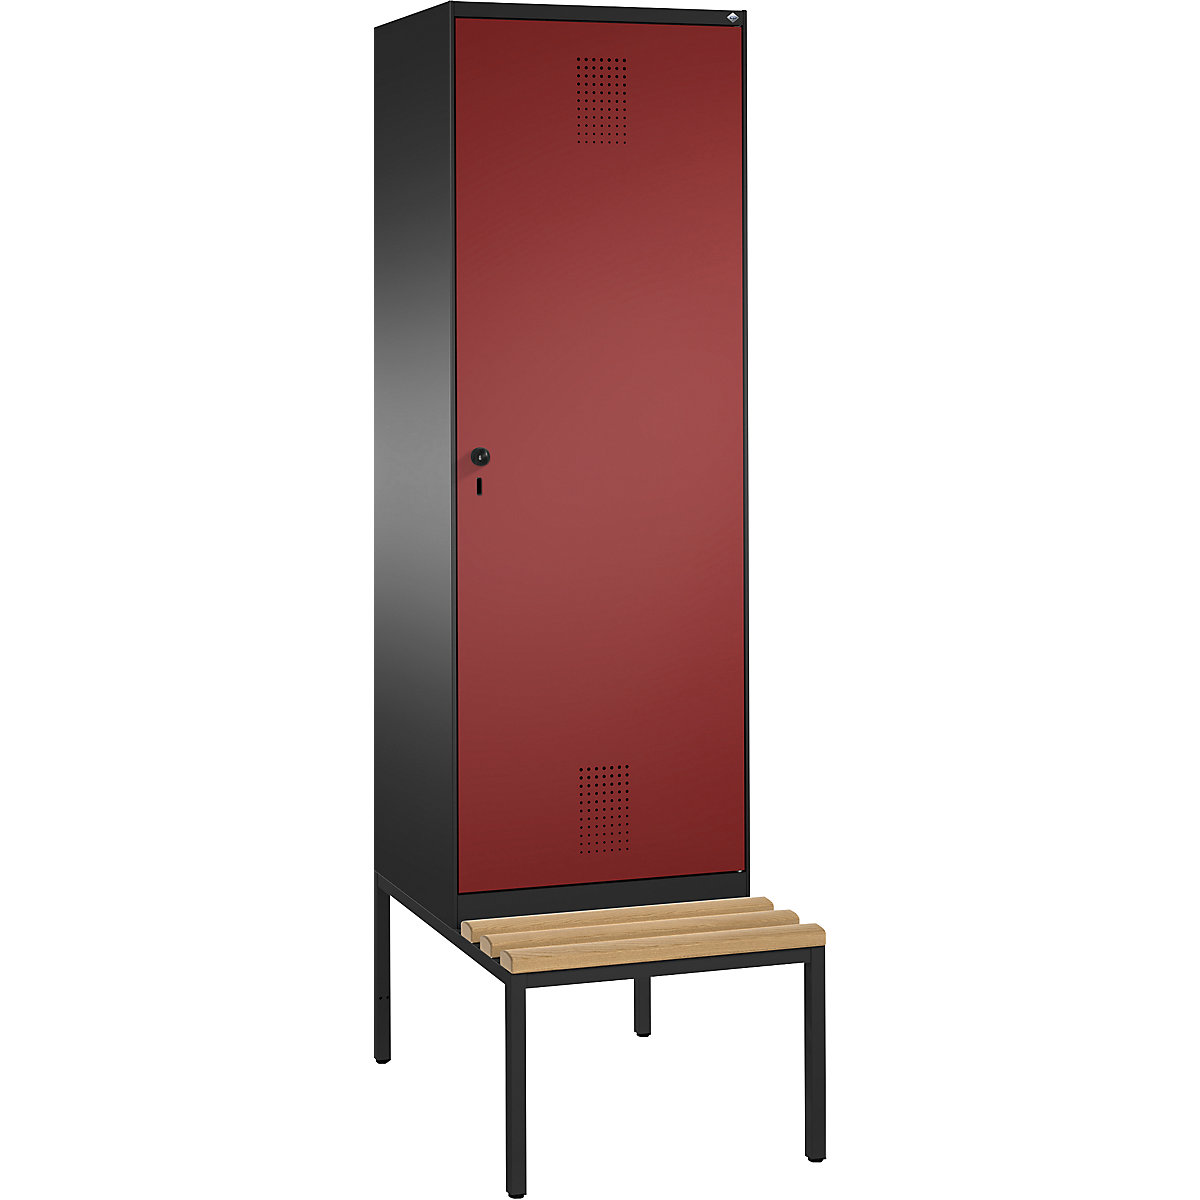 EVOLO Garderobenschrank, mit Sitzbank, Tür über 2 Abteile C+P, 2 Abteile, 1 Tür, Abteilbreite 300 mm, schwarzgrau / rubinrot-8